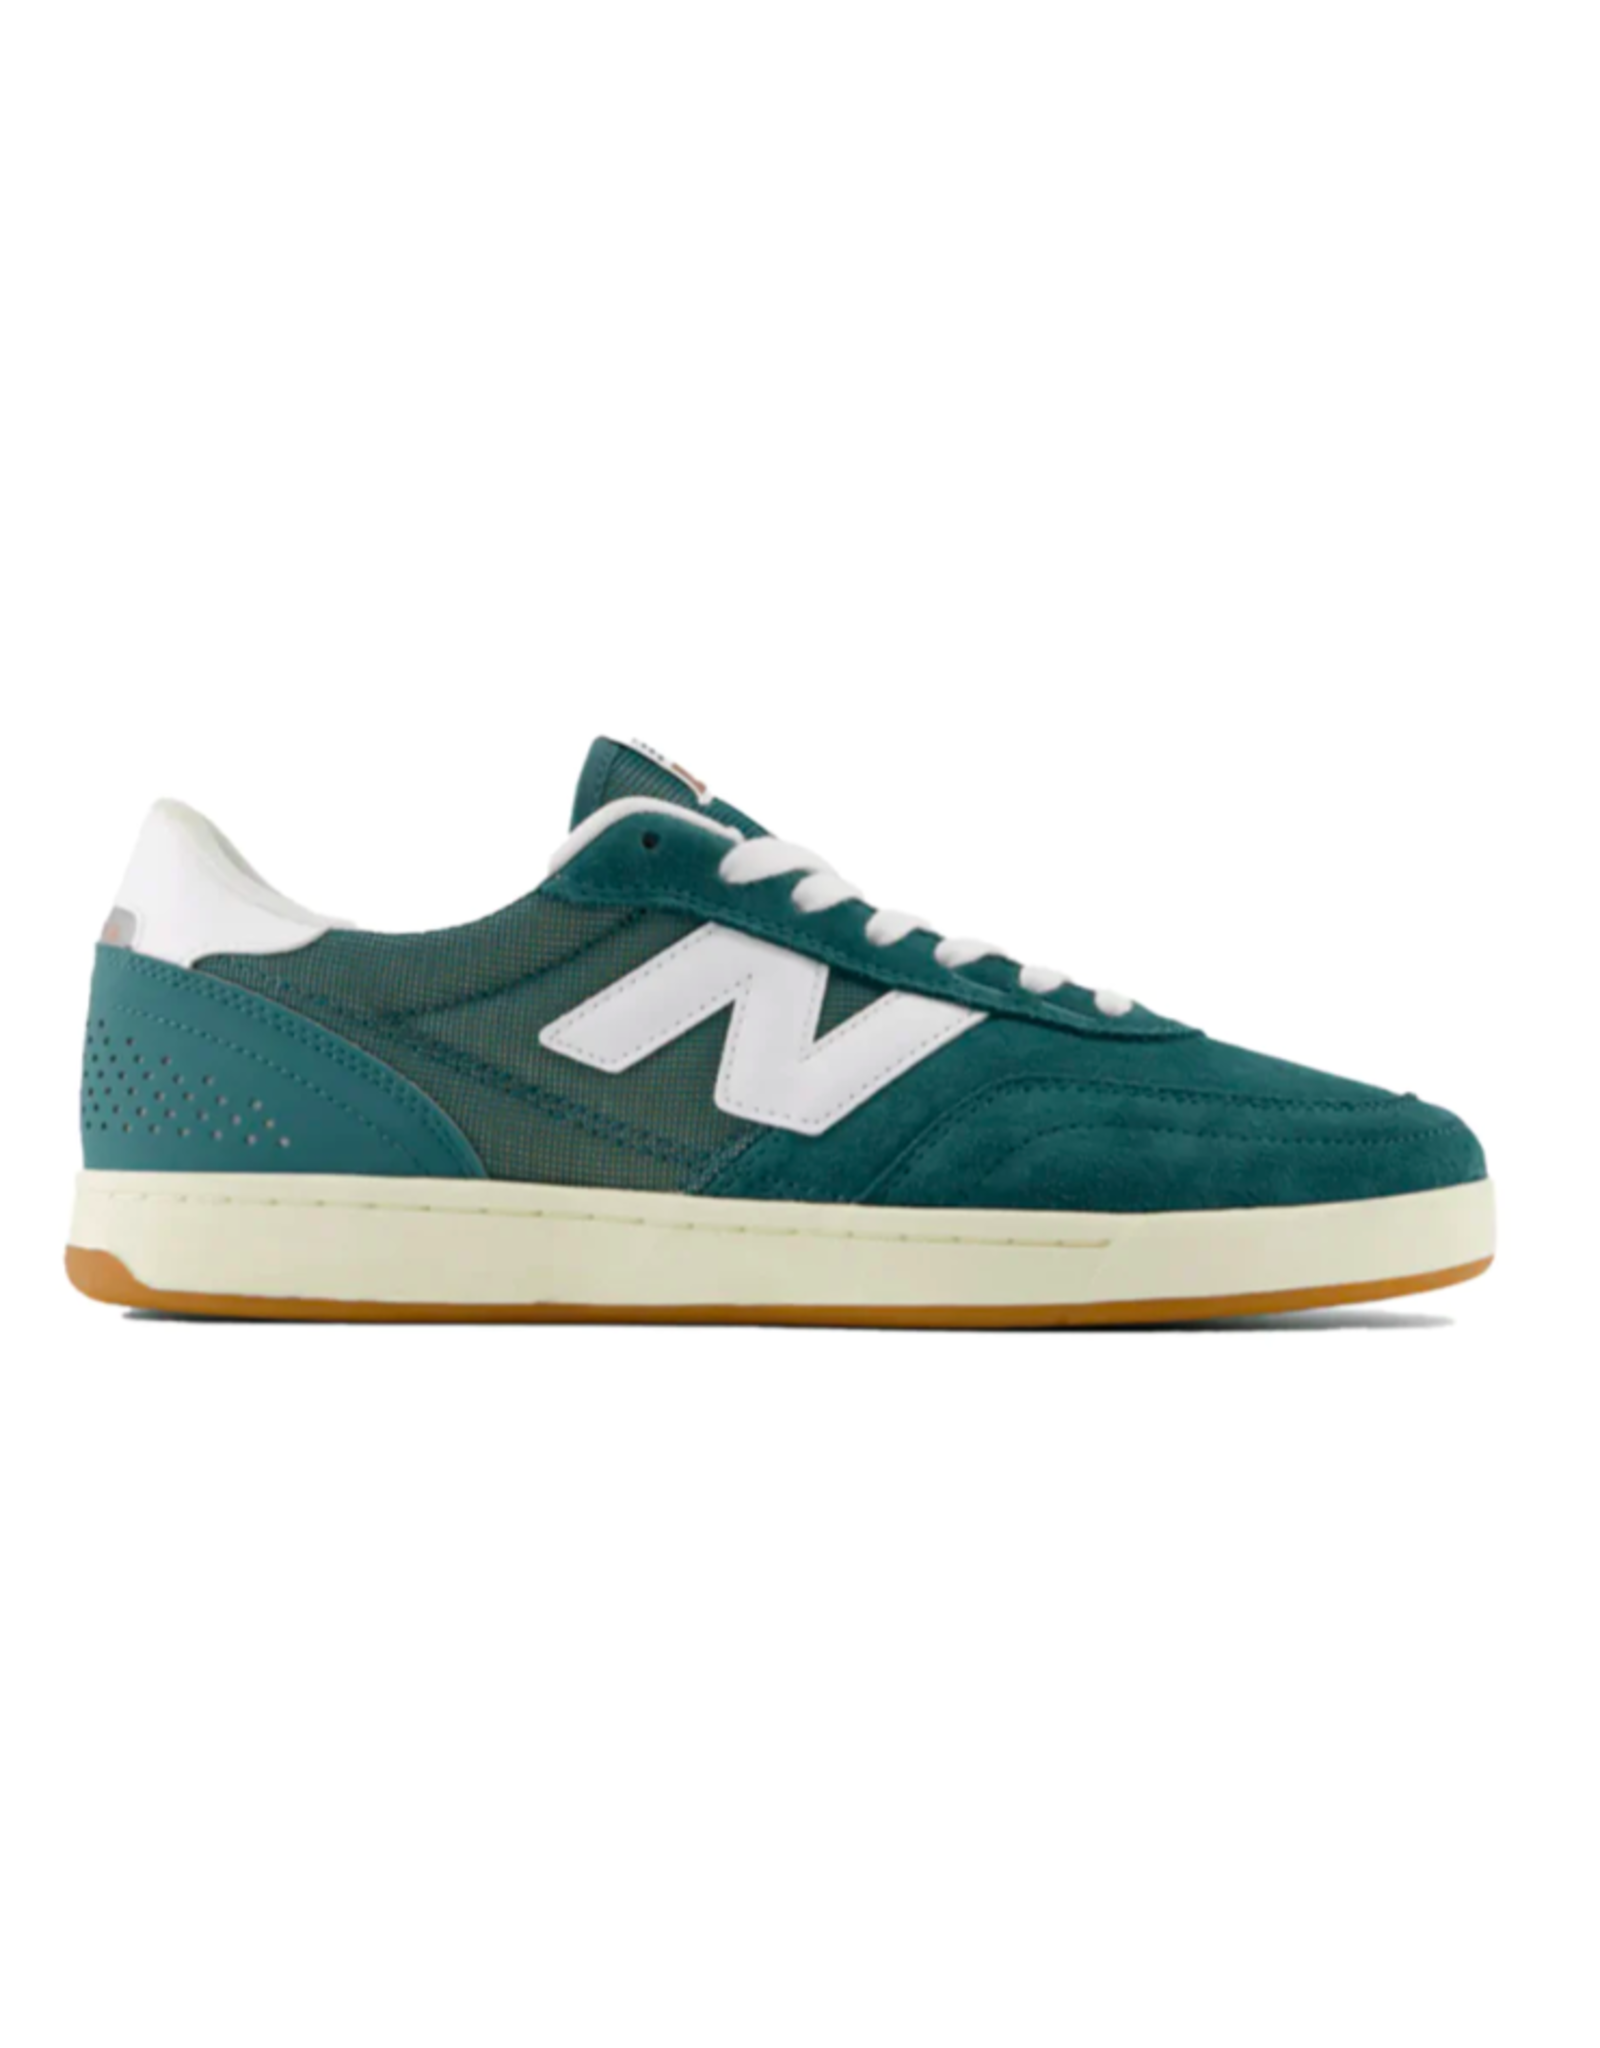 New Balance Men's Numeric 440 V2 Shoes Green/White